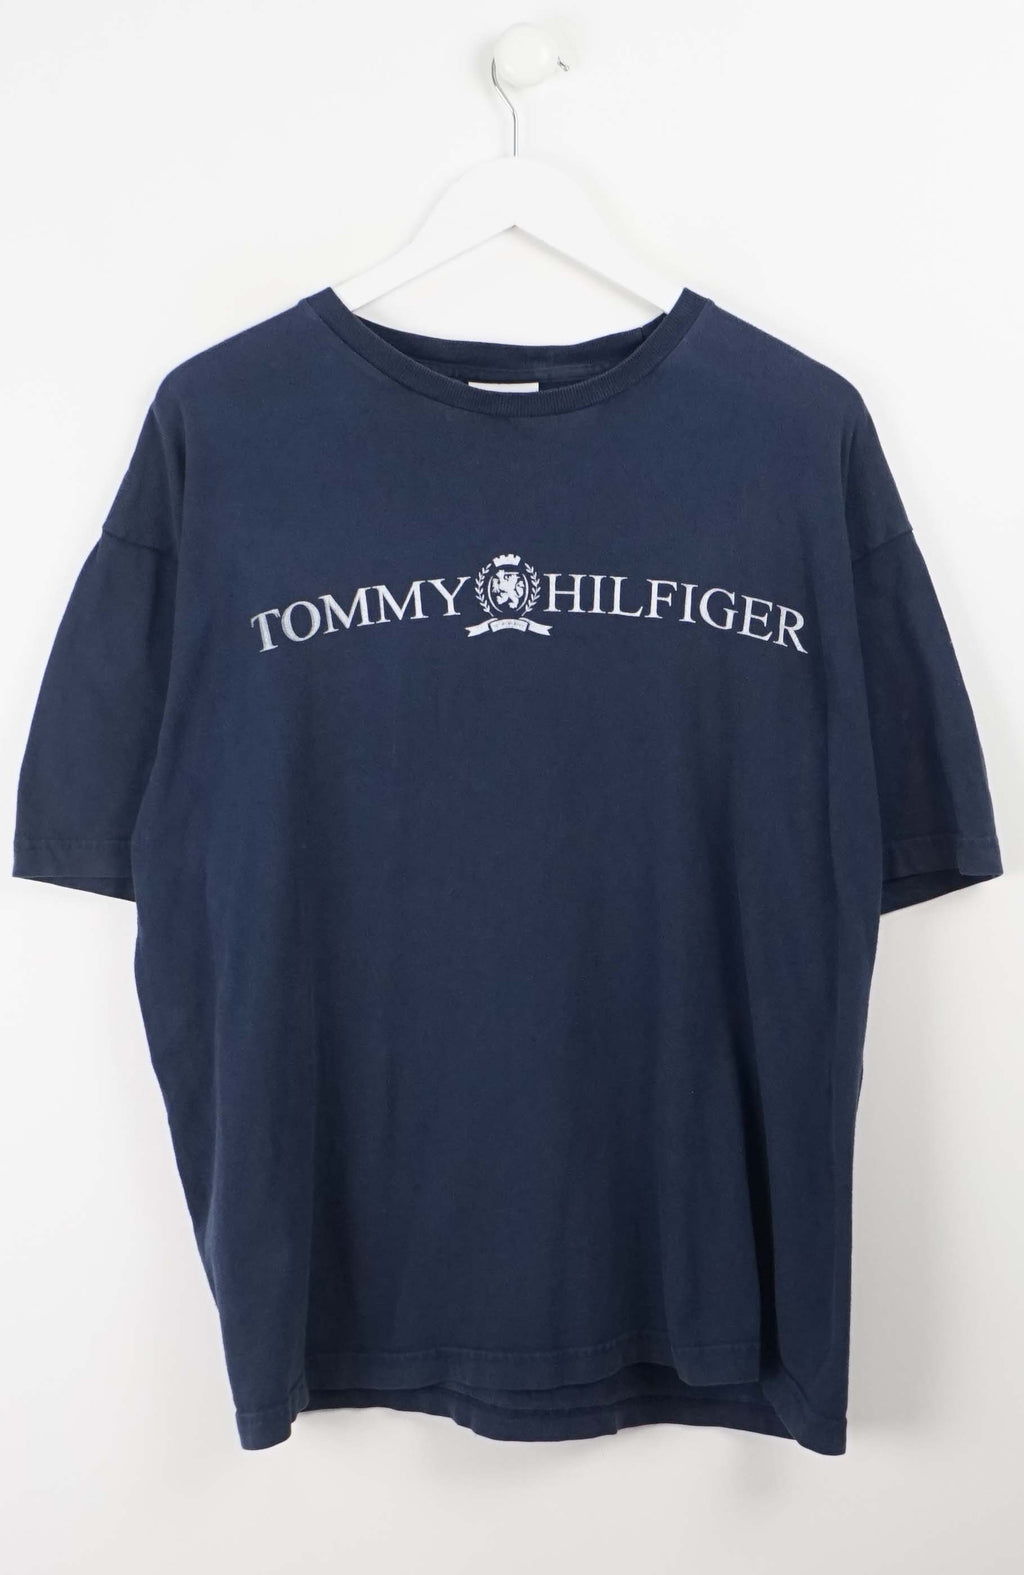 VINTAGE TOMMY HILFIGER T-SHIRT (M)